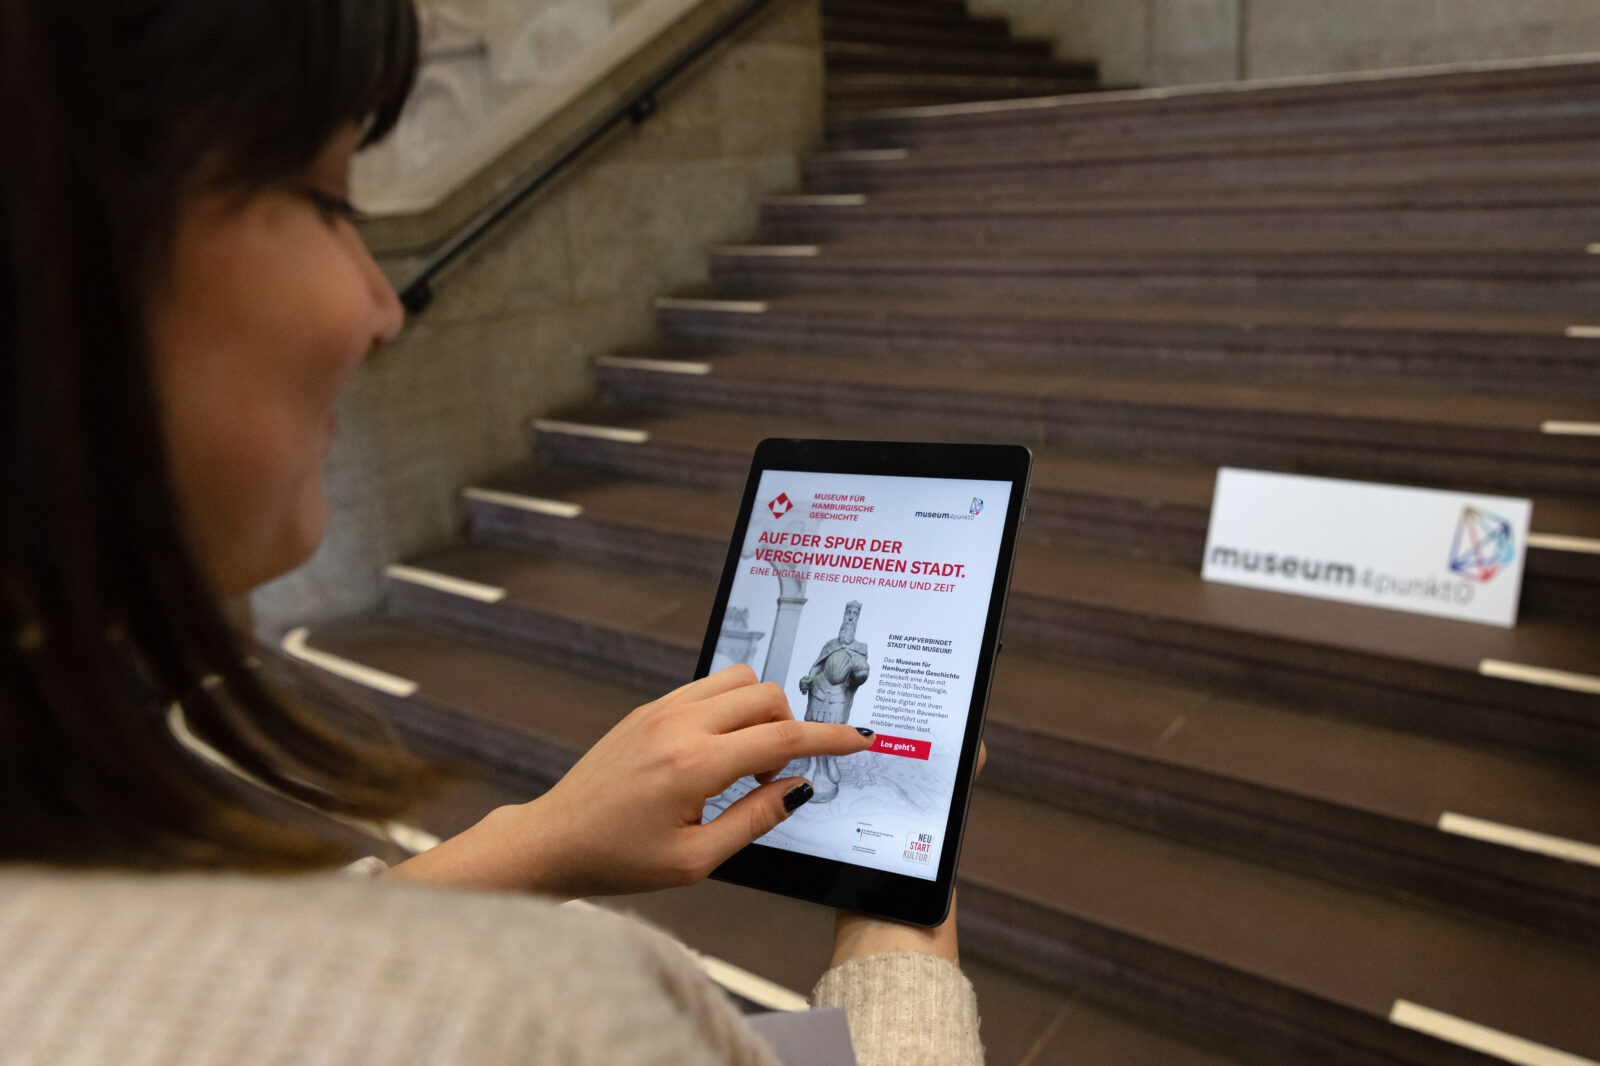 Das Museum der Hamburgischen Geschichte zeigt das Interface ihrer App zur Vermittlung der bei ihnen ausgestellten Spolien